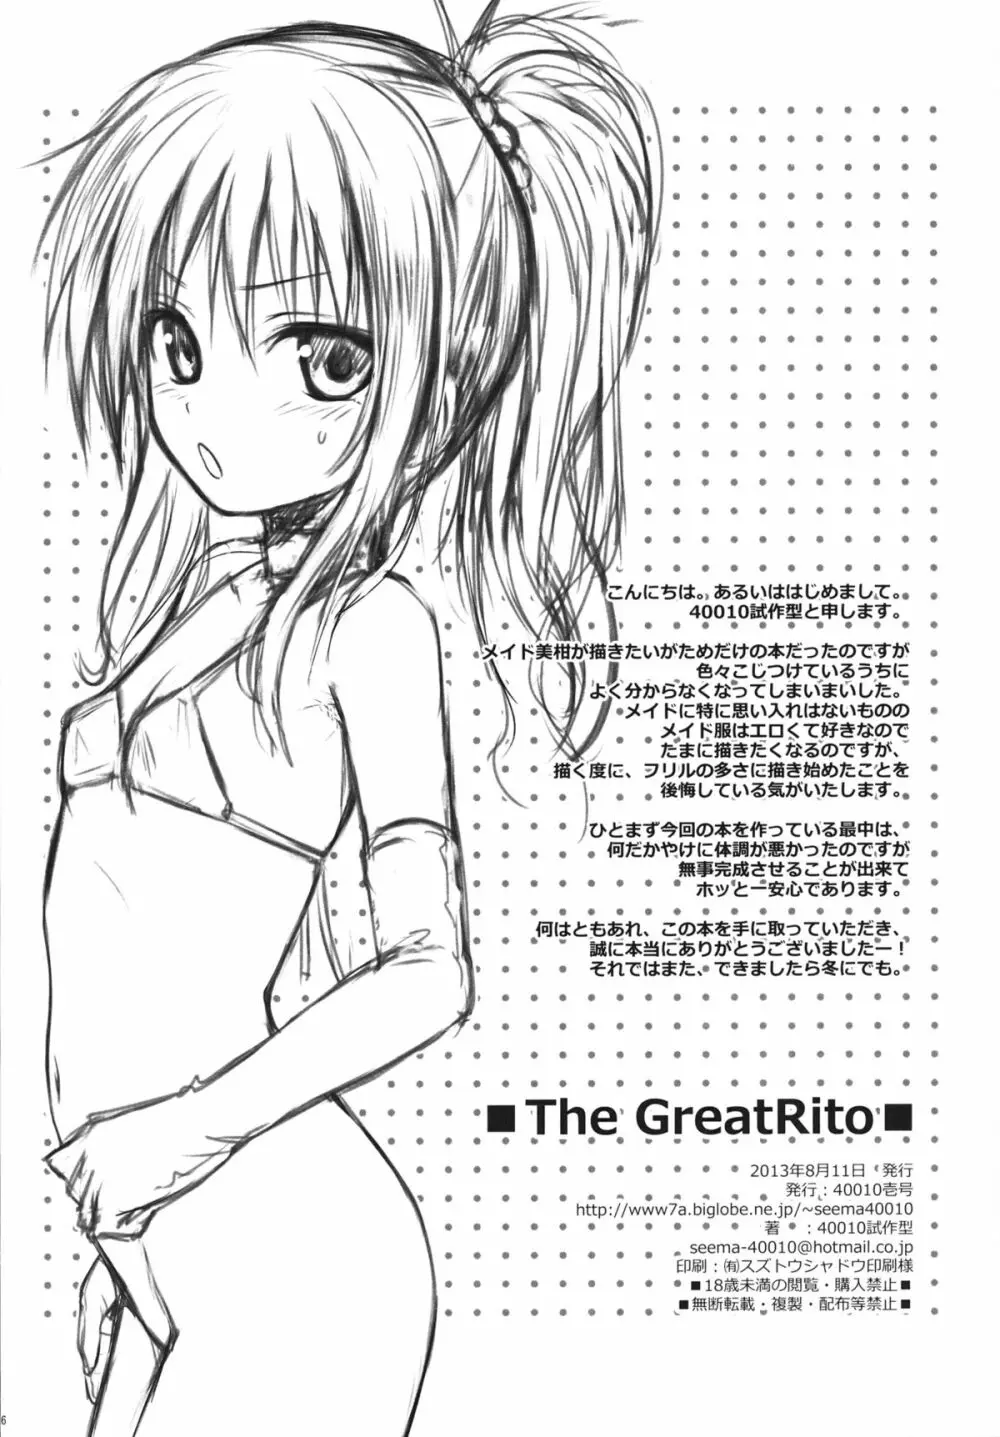 The GreatRito 25ページ